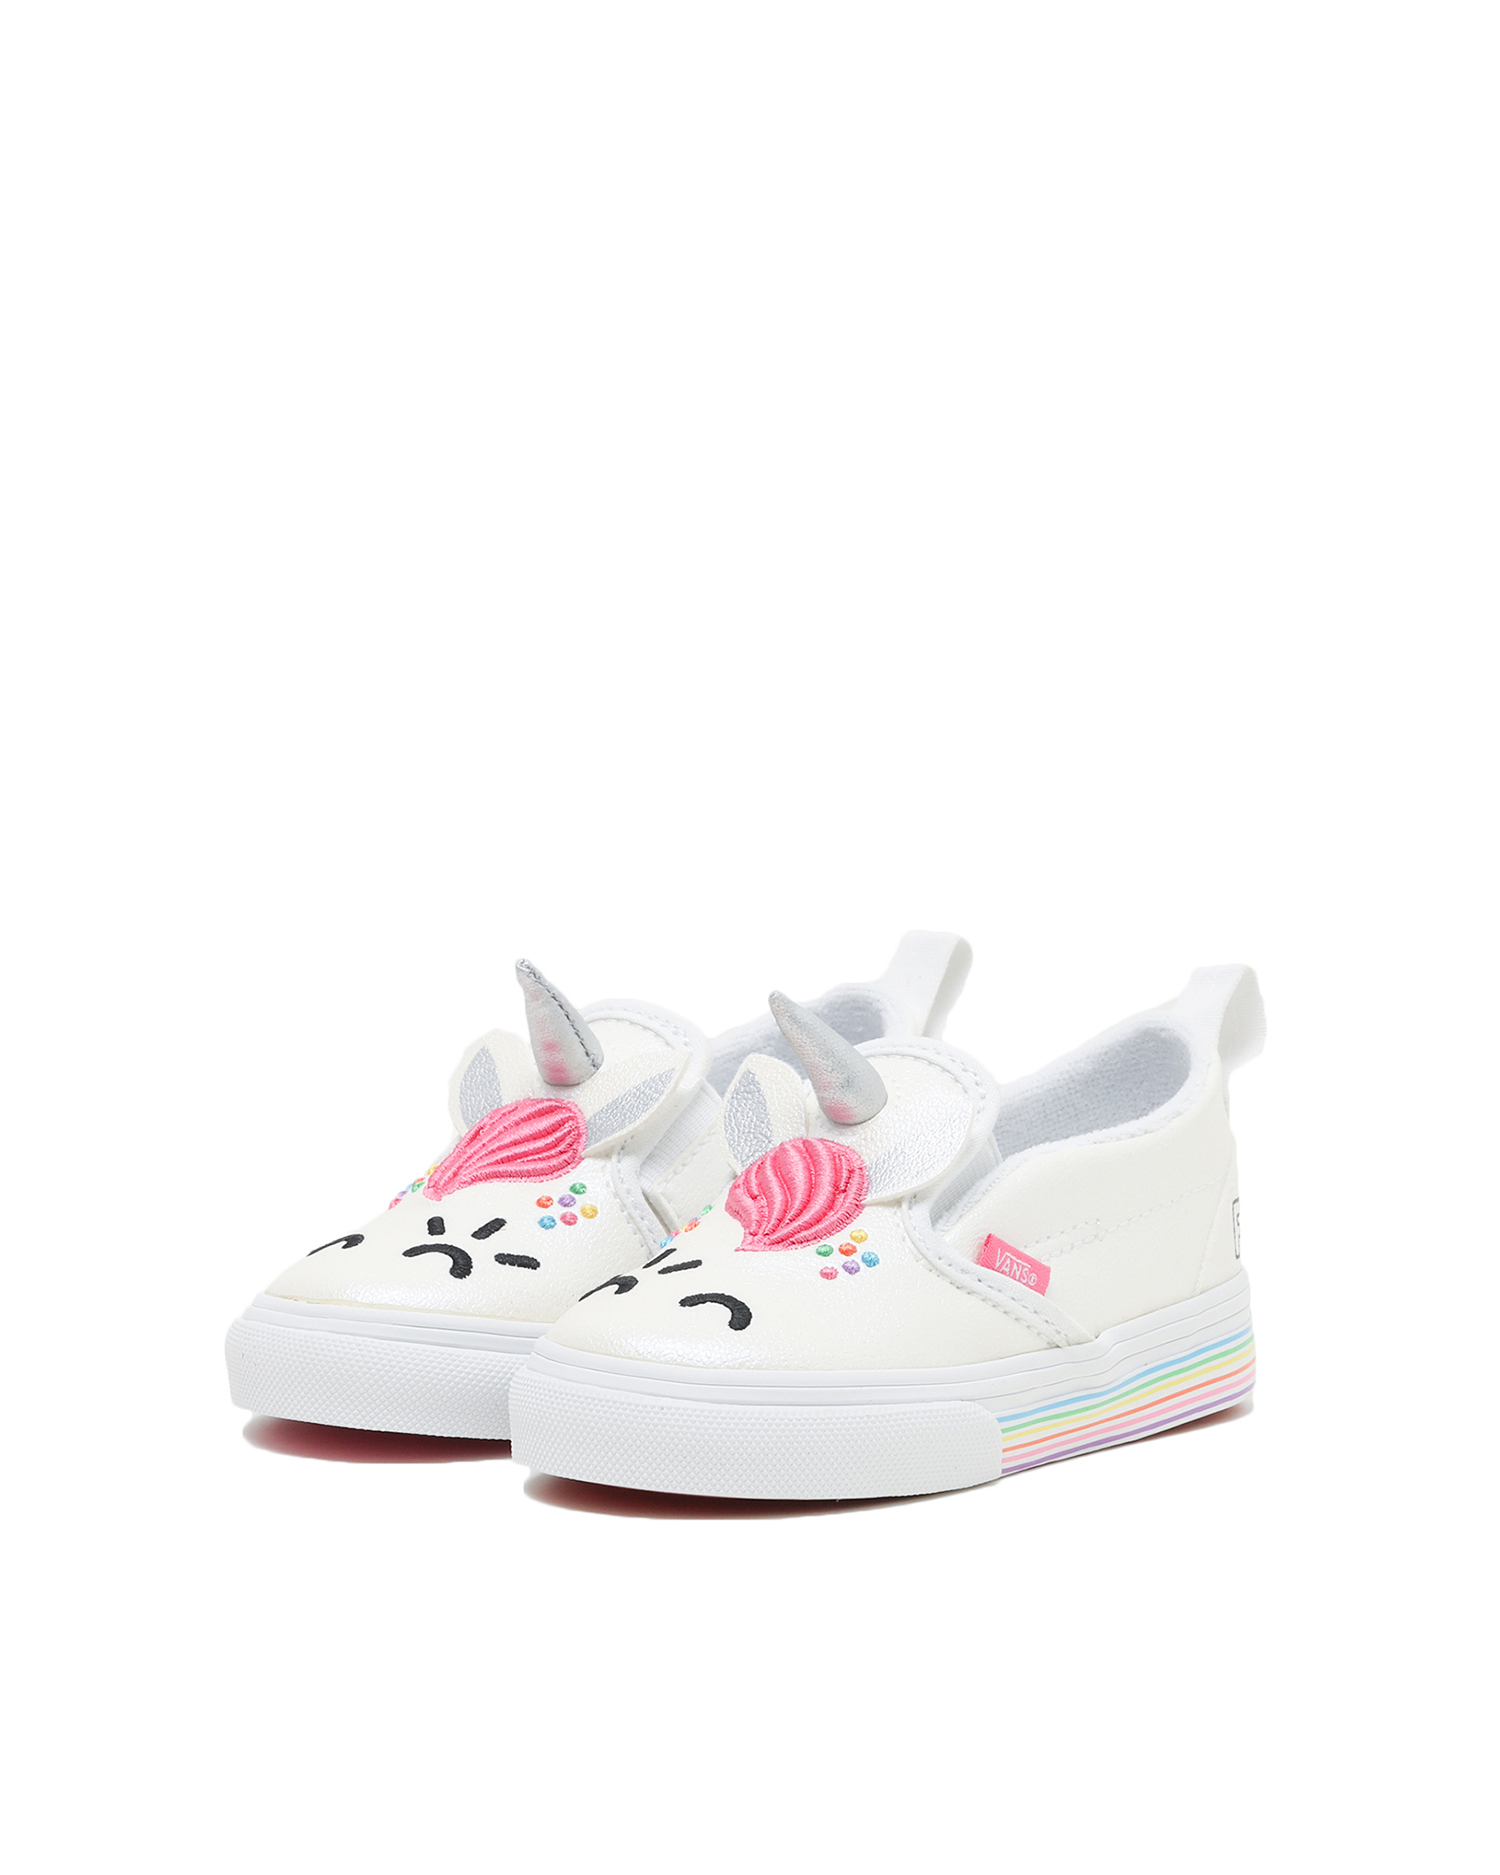 vans pink unicorn shoes